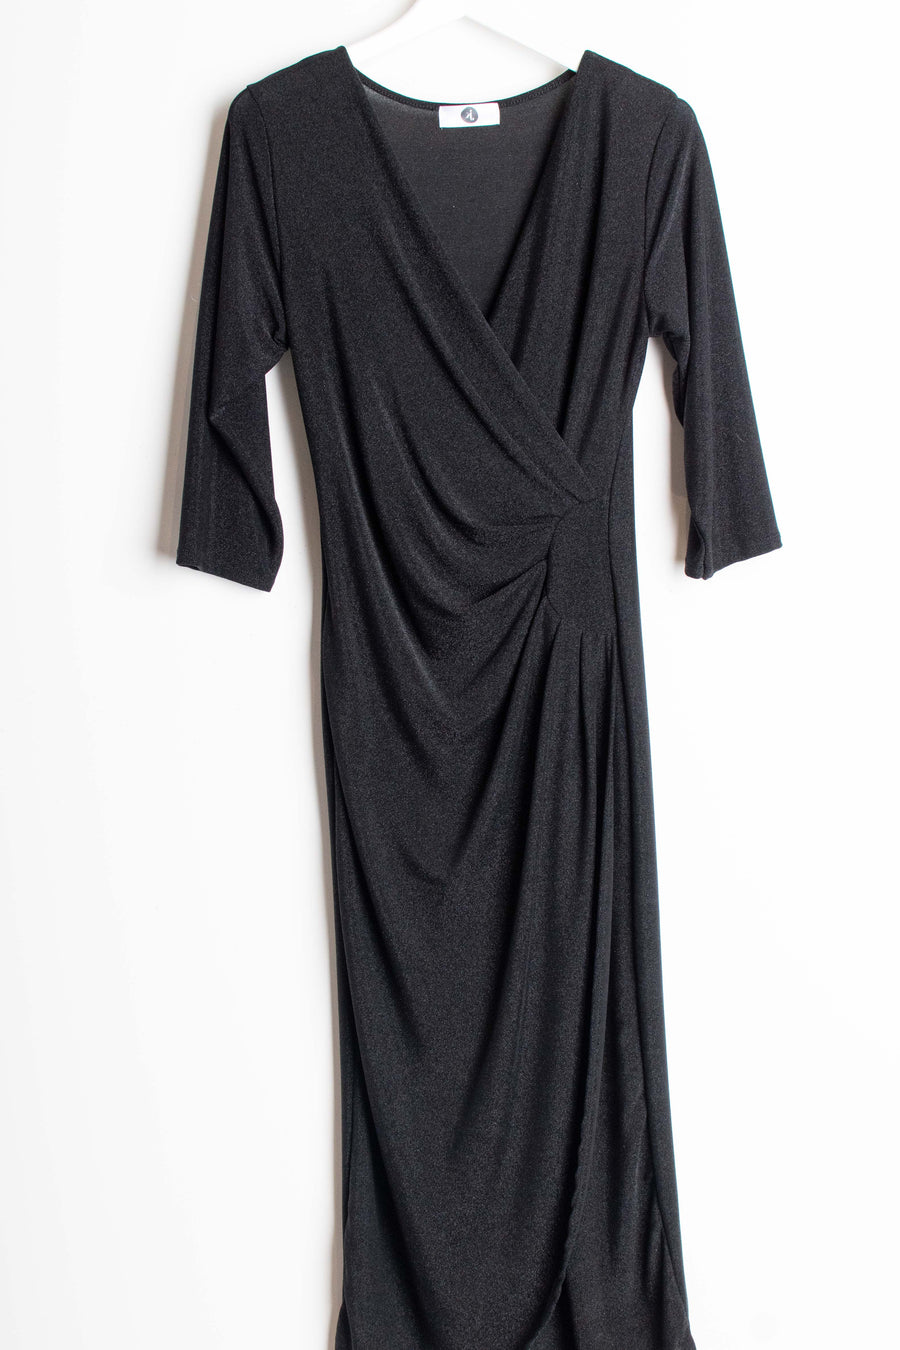 jackieandkate Kleid Glitzer V-Ausschnitt schwarz